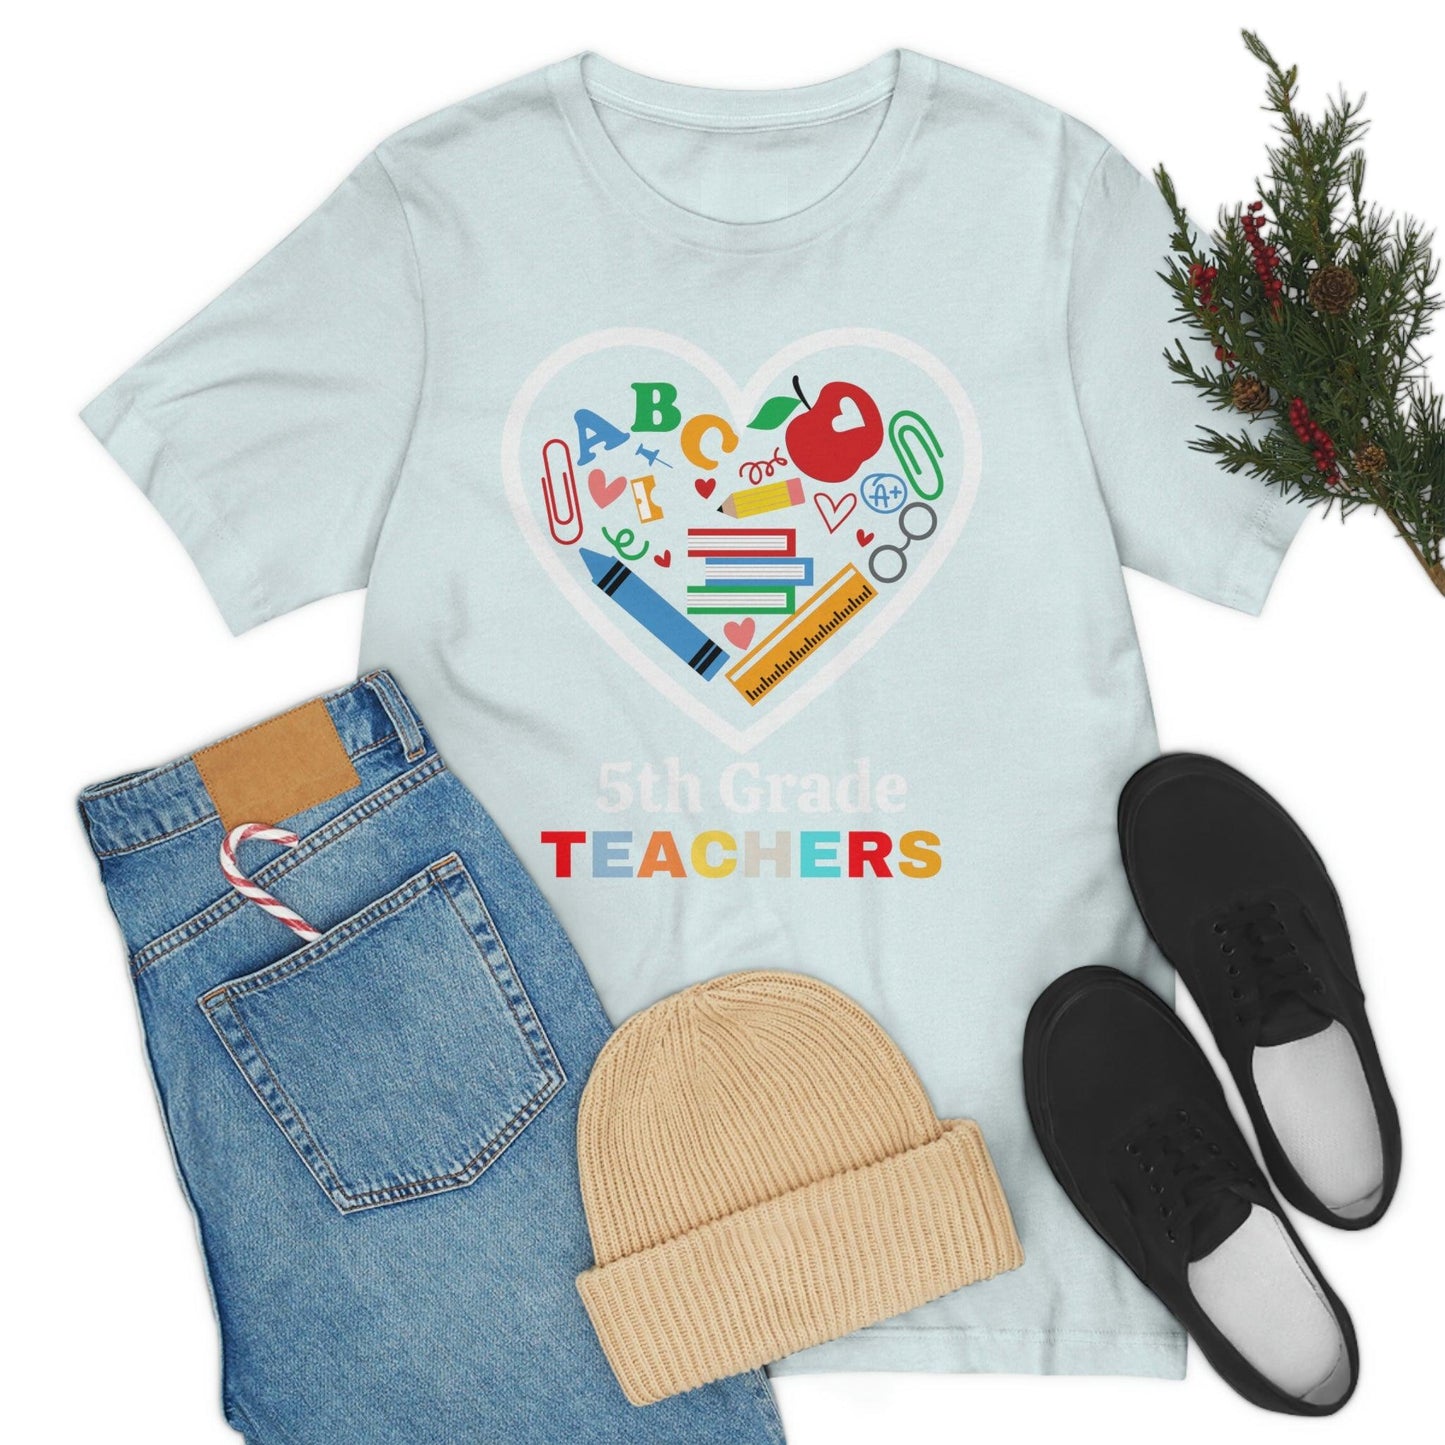 Love 5th Grade Teacher Shirt - Teacher Appreciation Shirt - Gift for Teachers - 5th Grade shirt